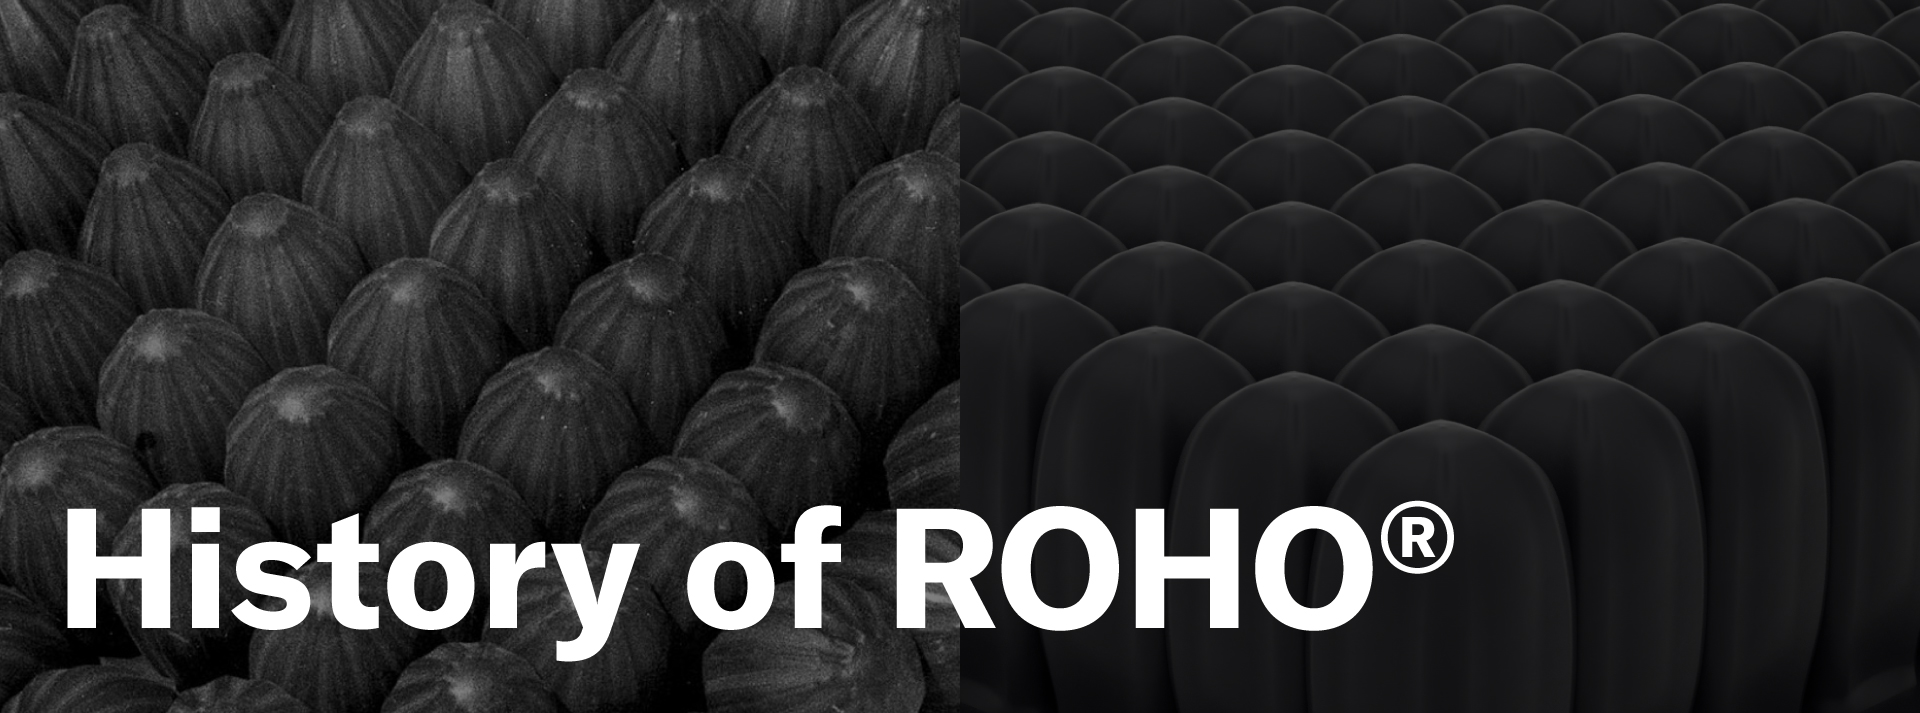 History of ROHO